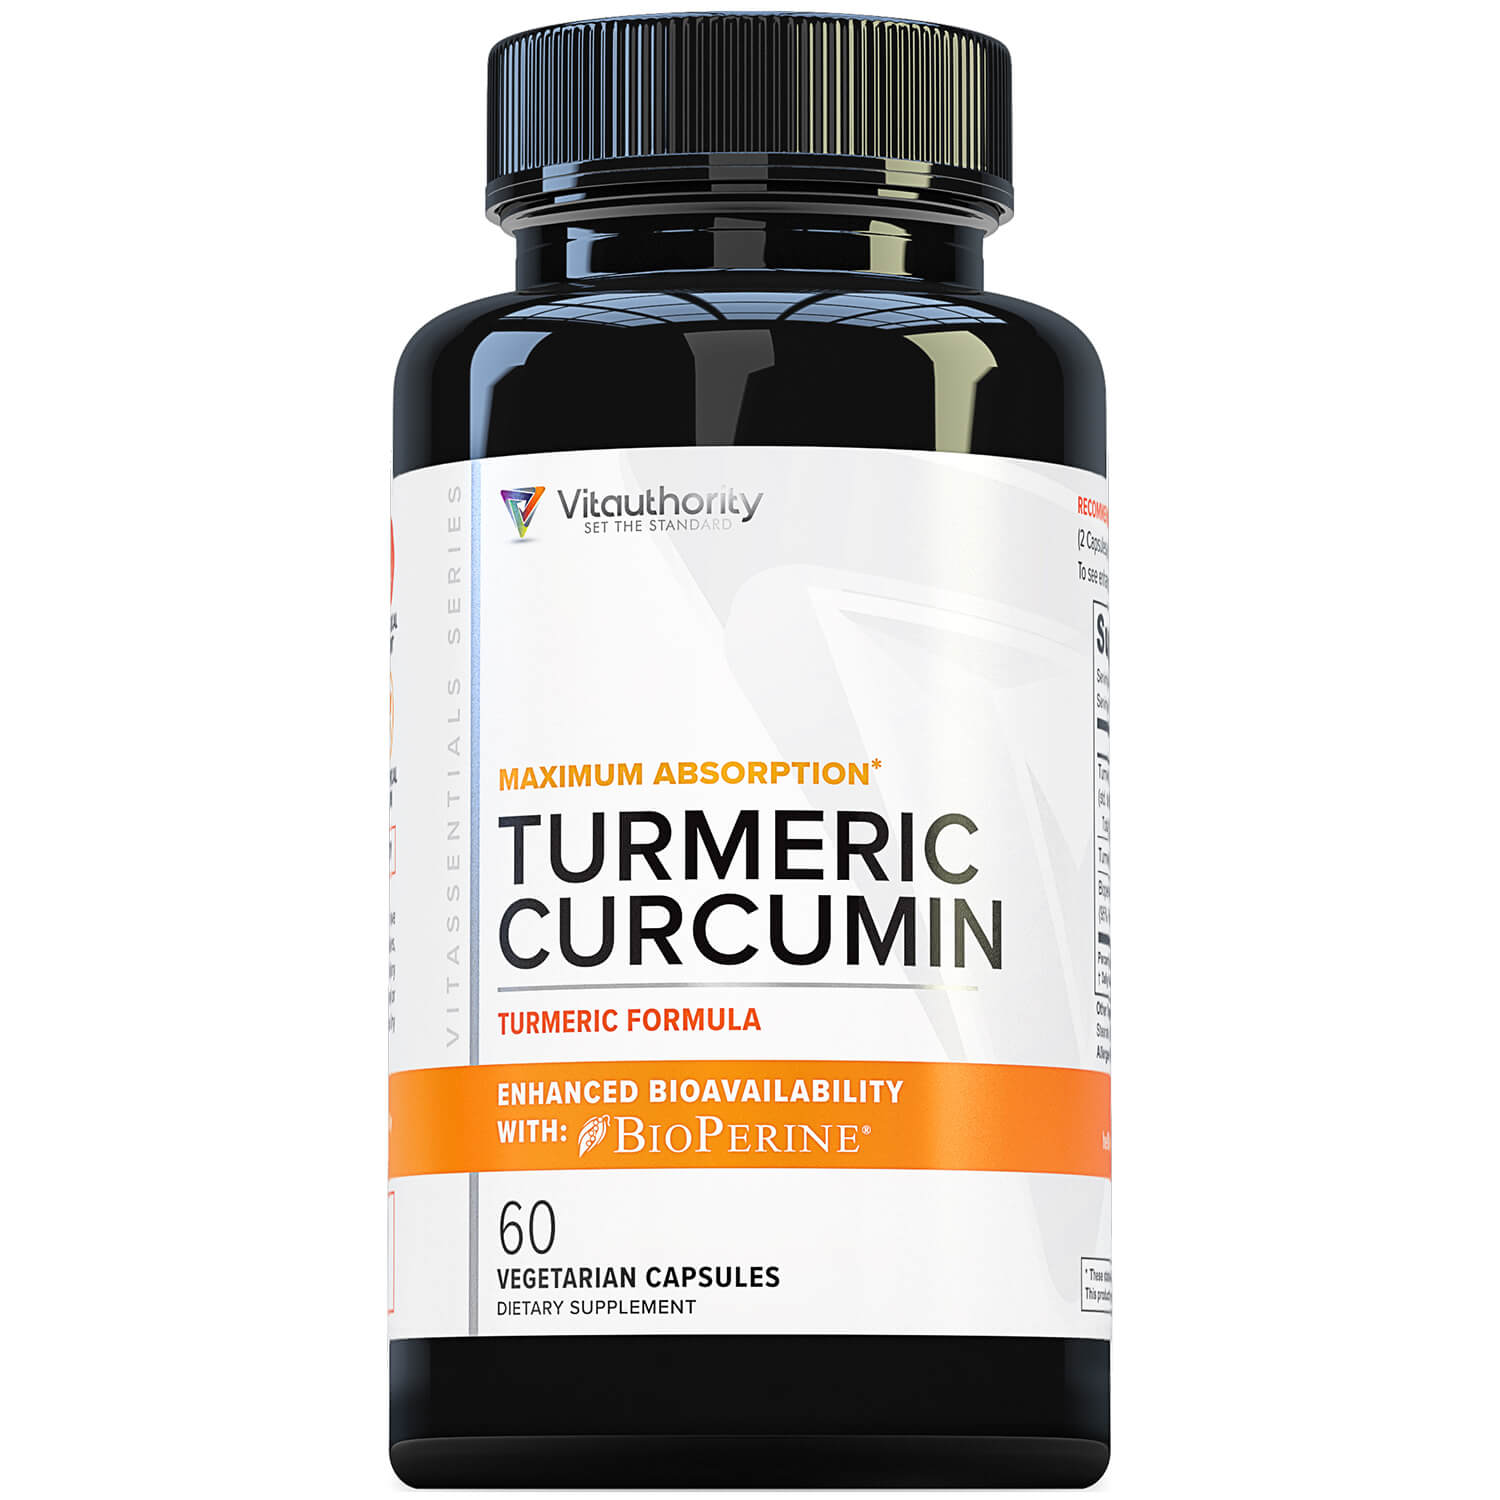 Extra Strength Turmeric Curcumin